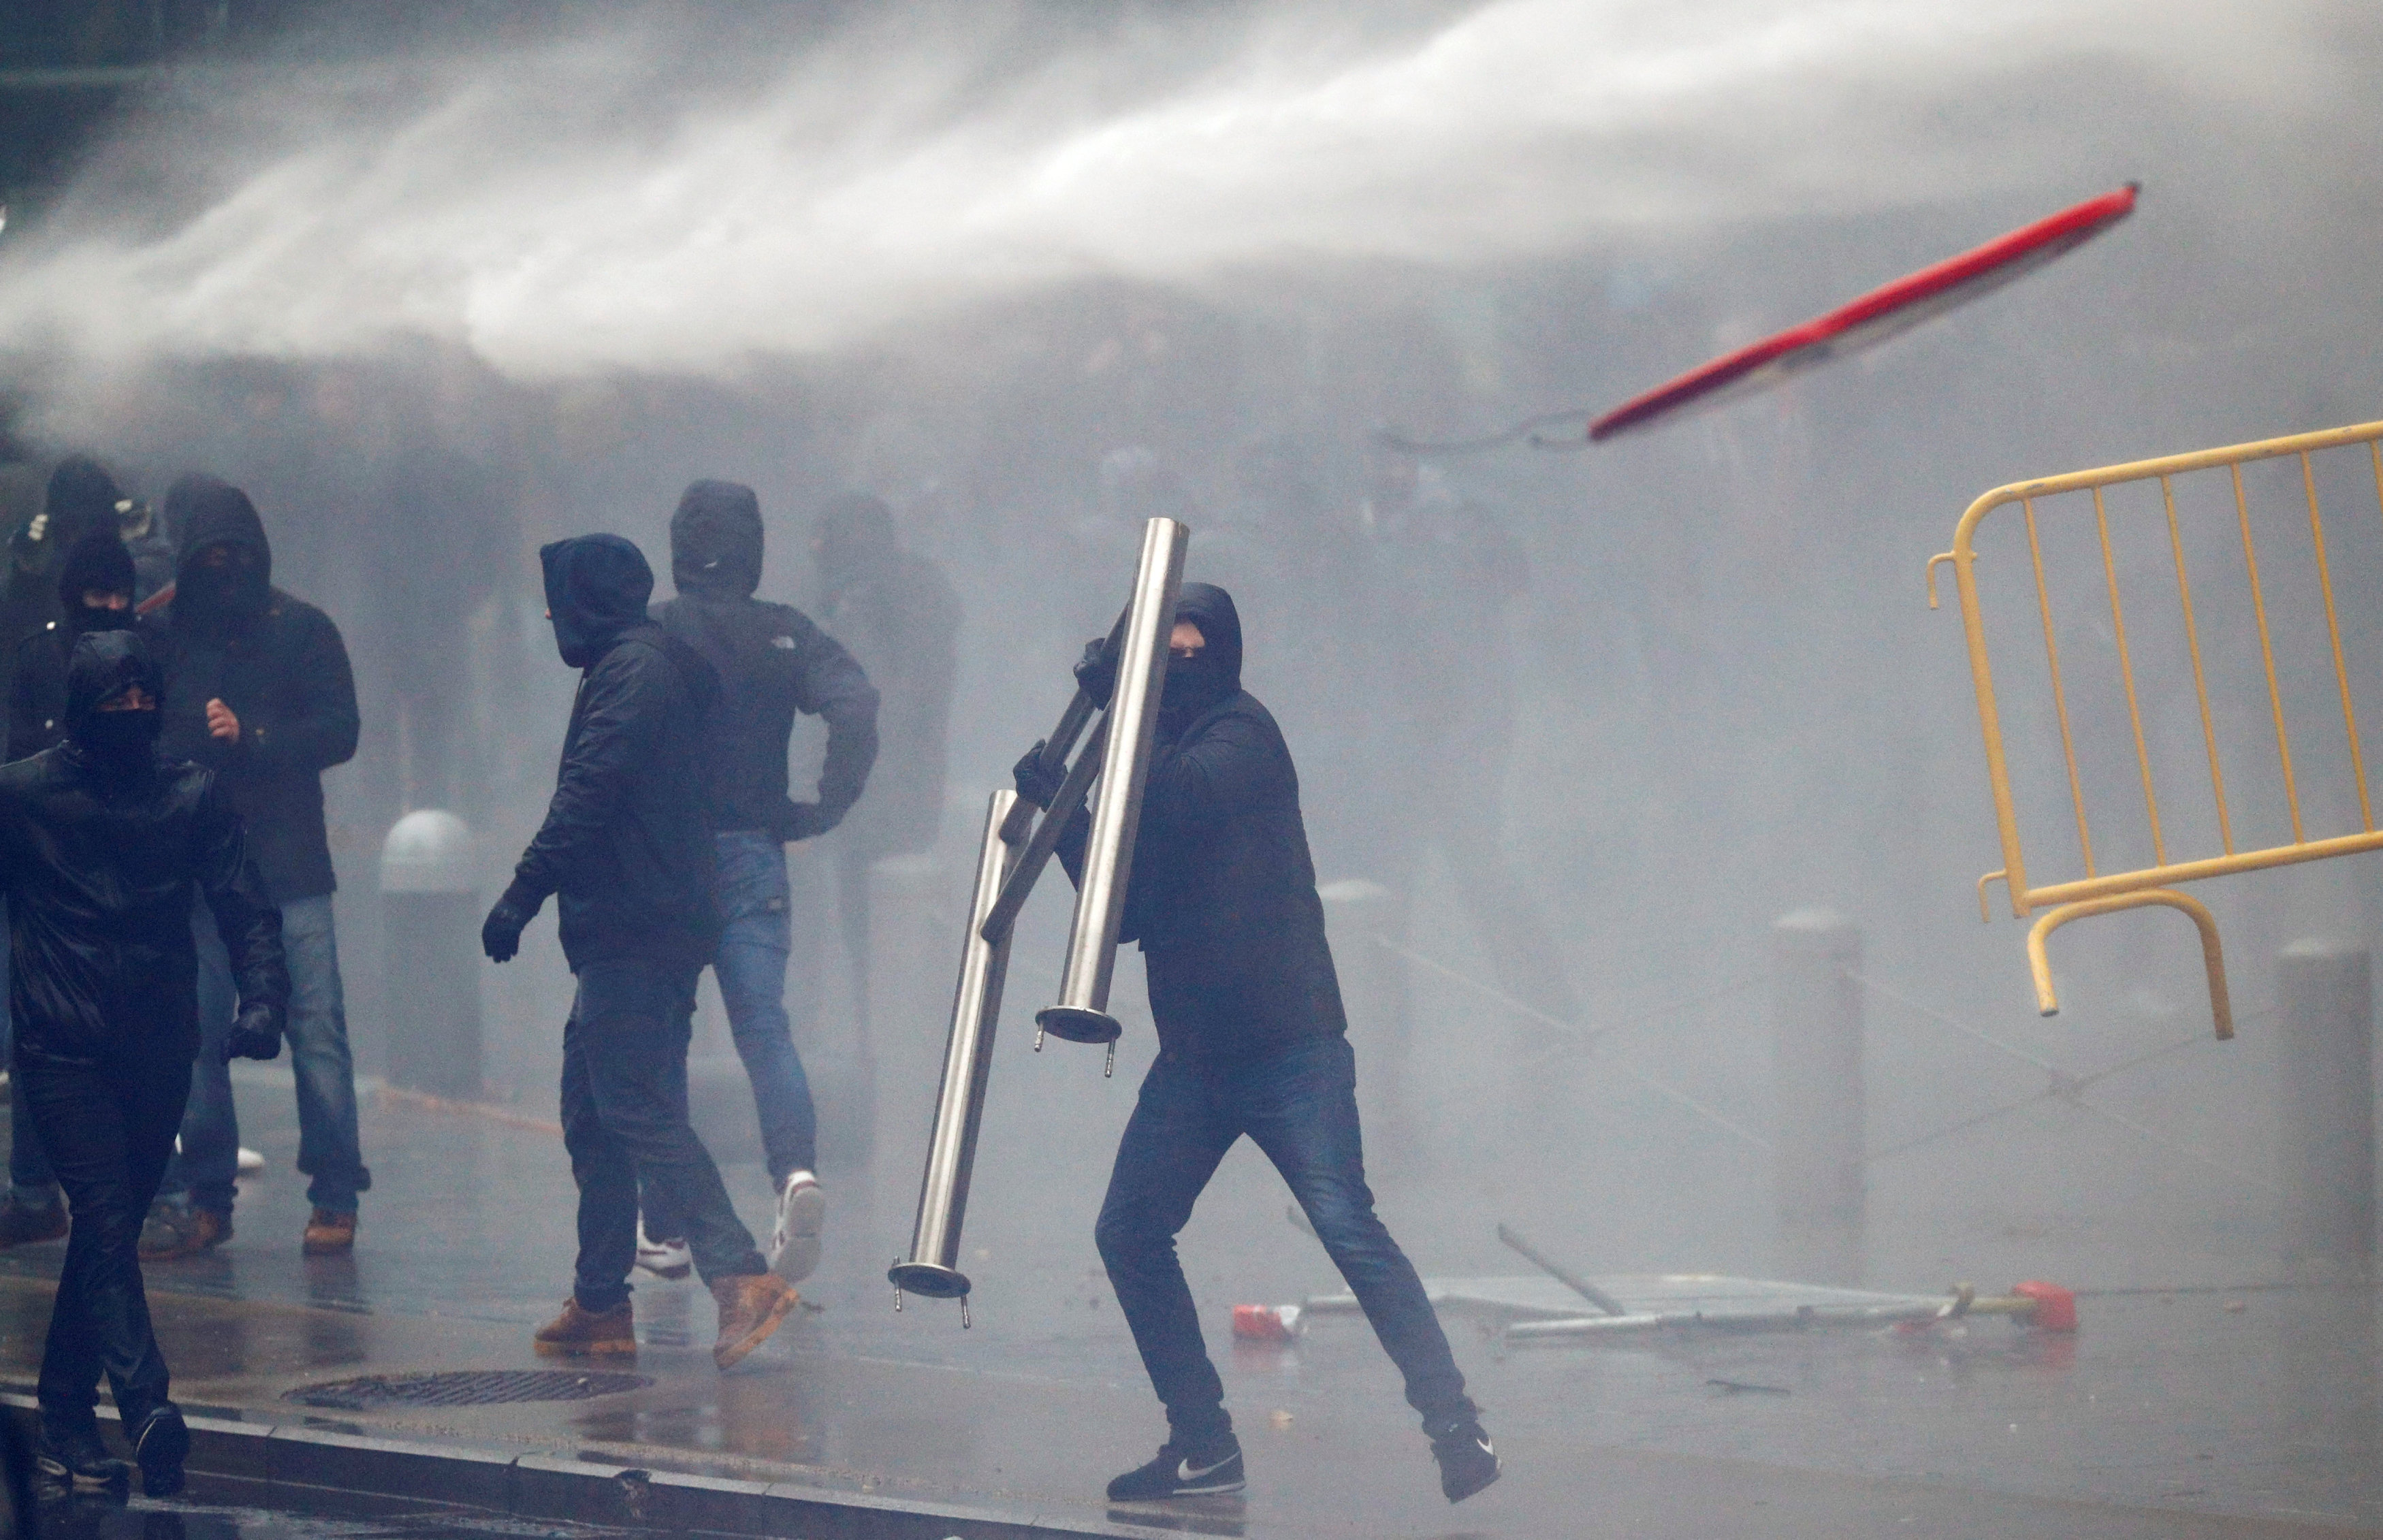 أعمال العنف تحرق بروكسل فى مواجهات مفتوحة بين الأمن والمتظارهين